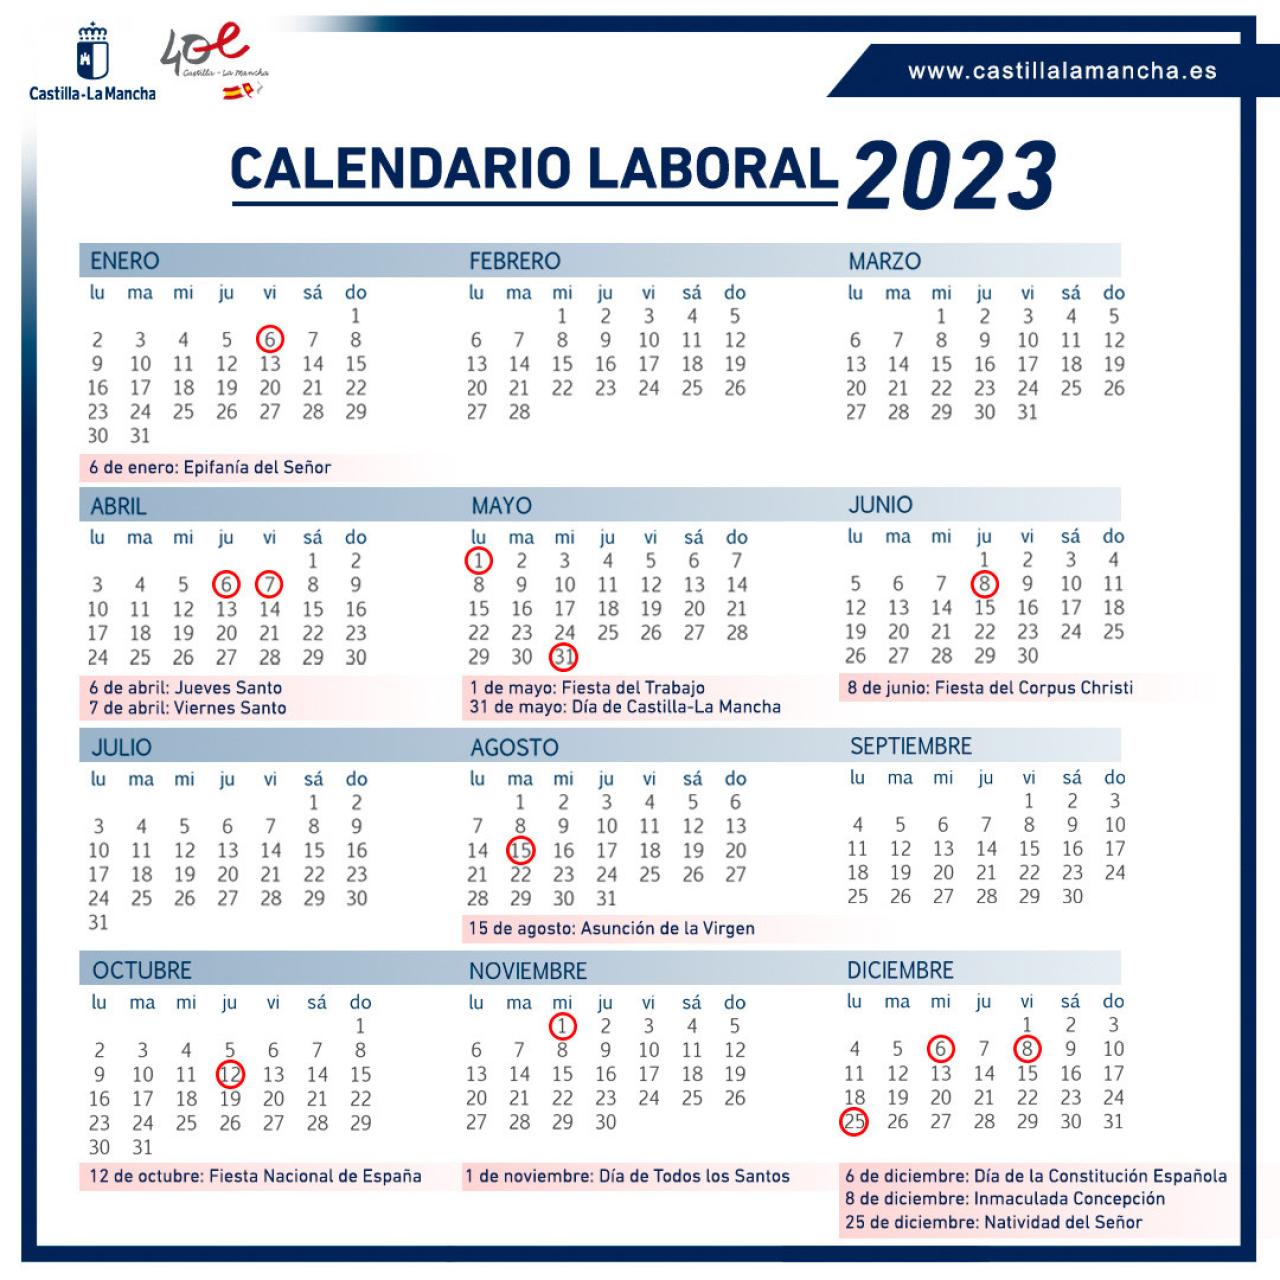 Así queda el calendario laboral de 2023 en Castilla-La Mancha: festivos y puentes a disfrutar